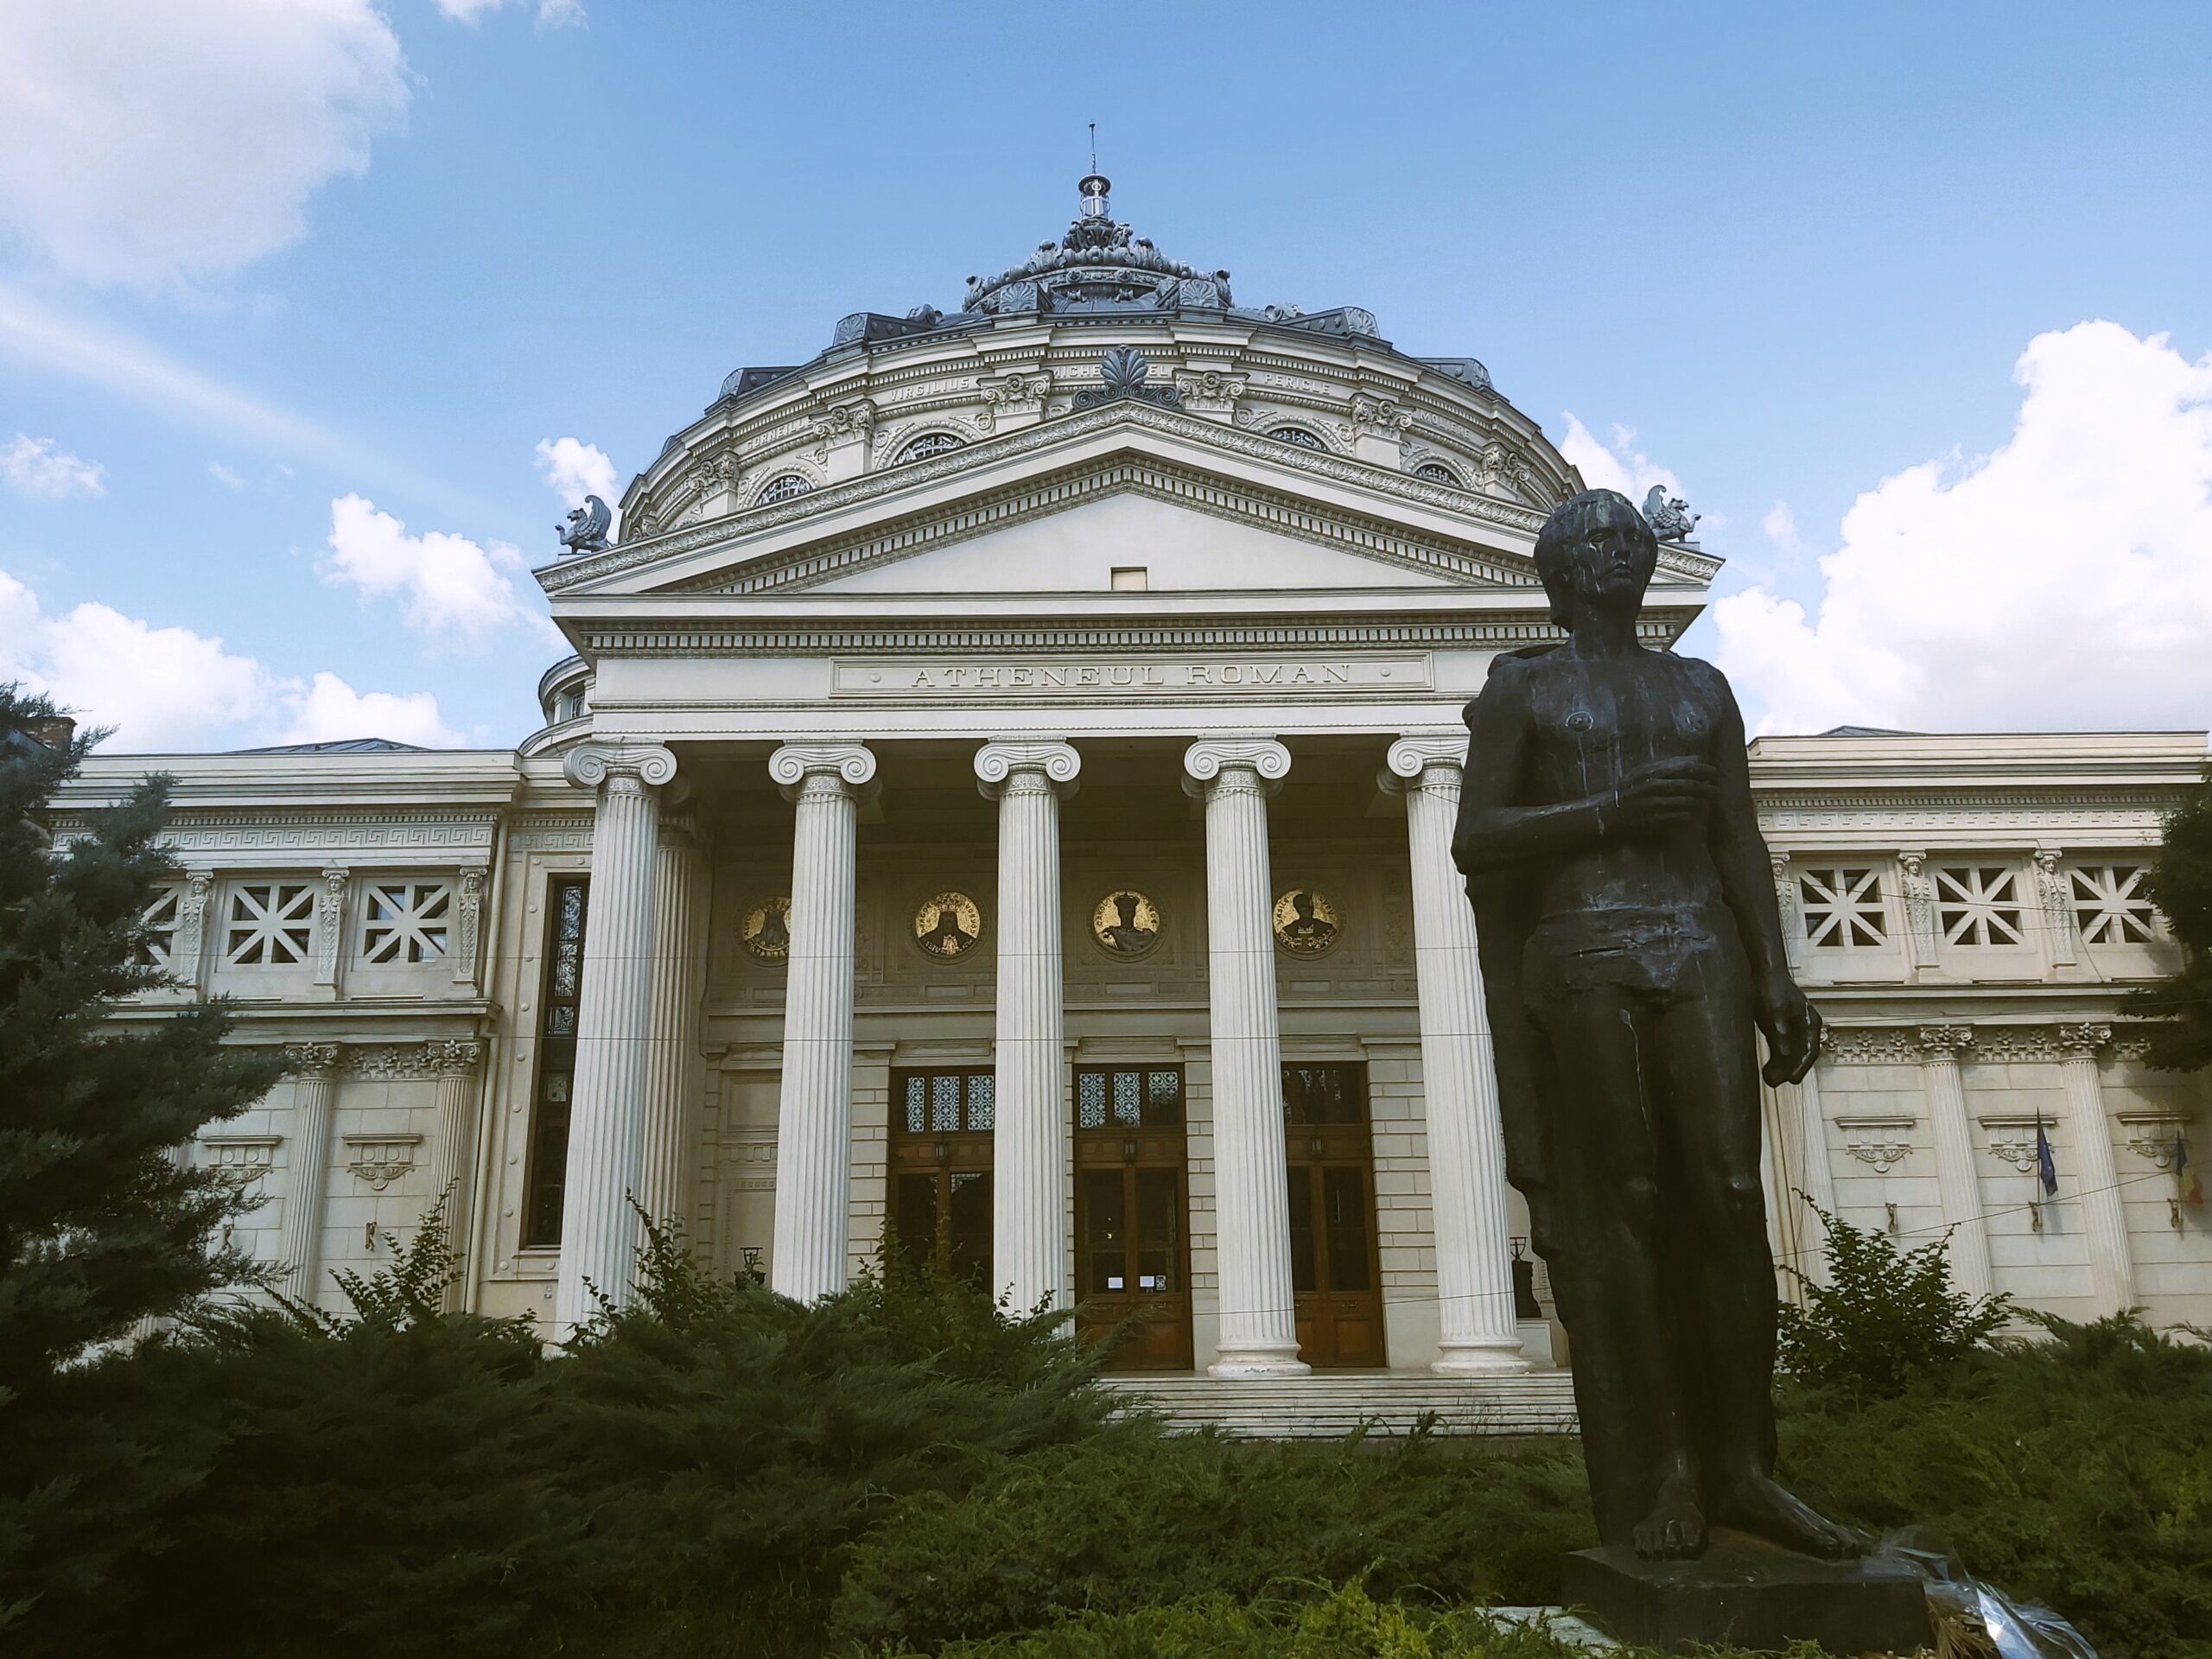 The Ateneul Român (the Romanian Athenaeum) with a statue of Mihai Eminescu in front in București, Romania